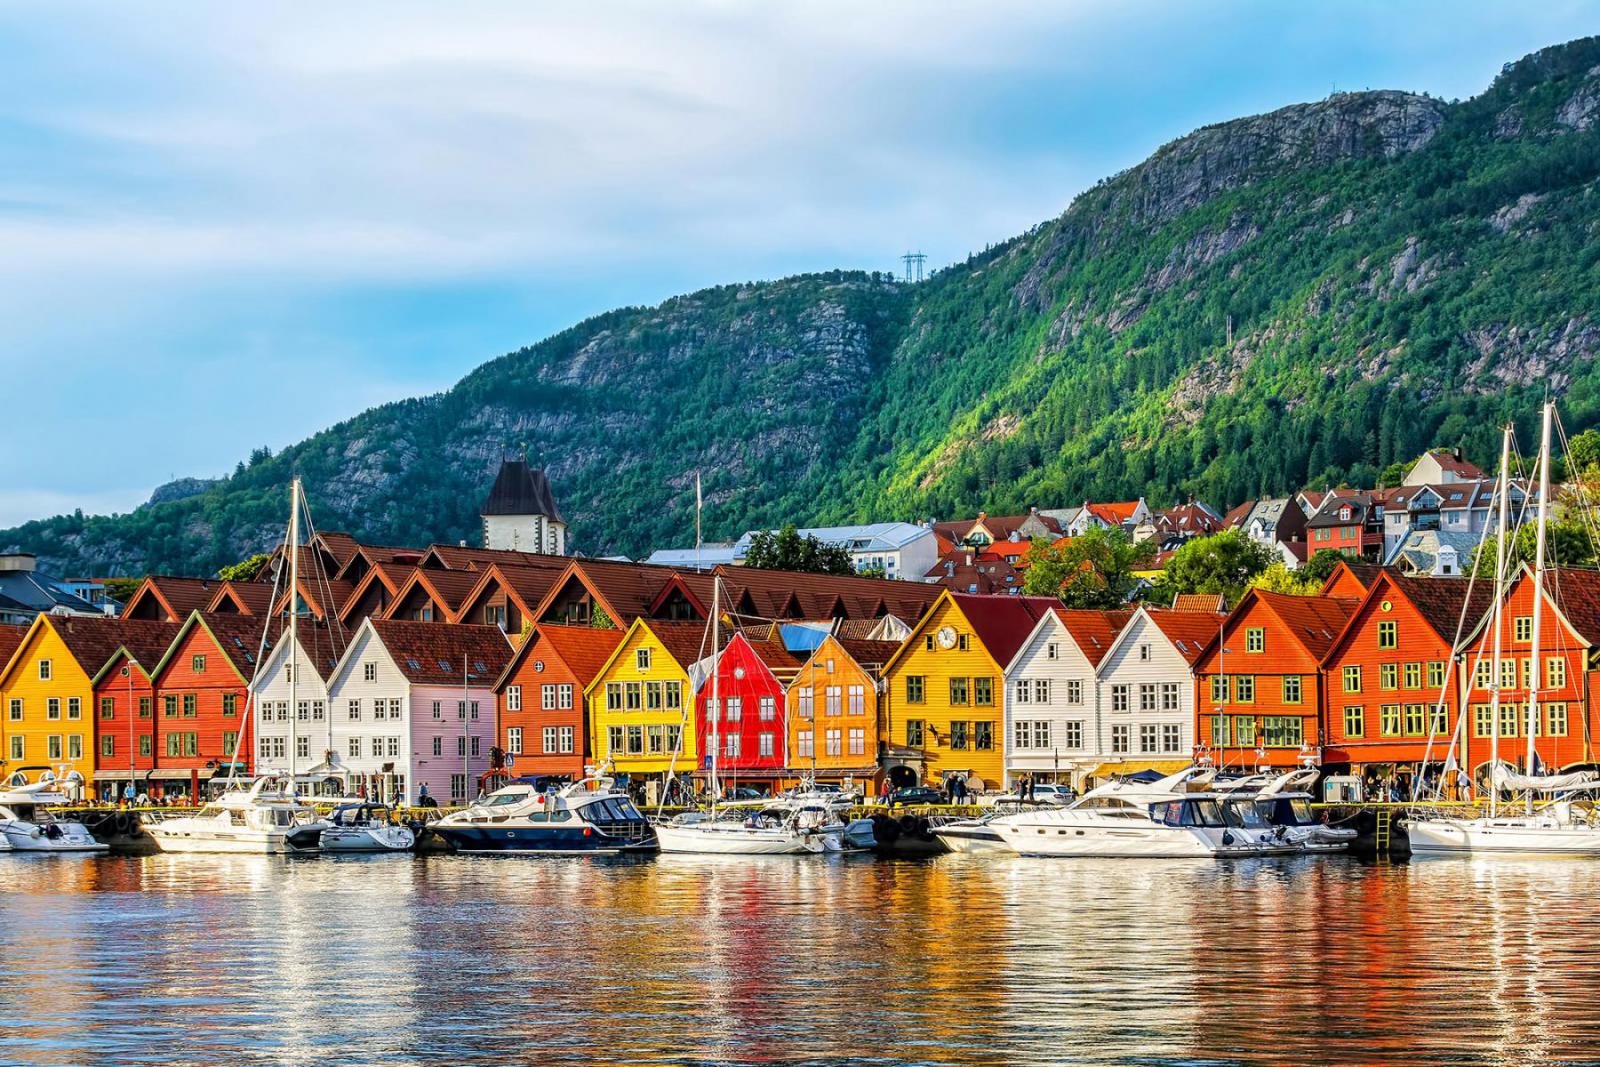 CITY & FJORD: stedentrip en natuur in veelzijdig Noorwegen 